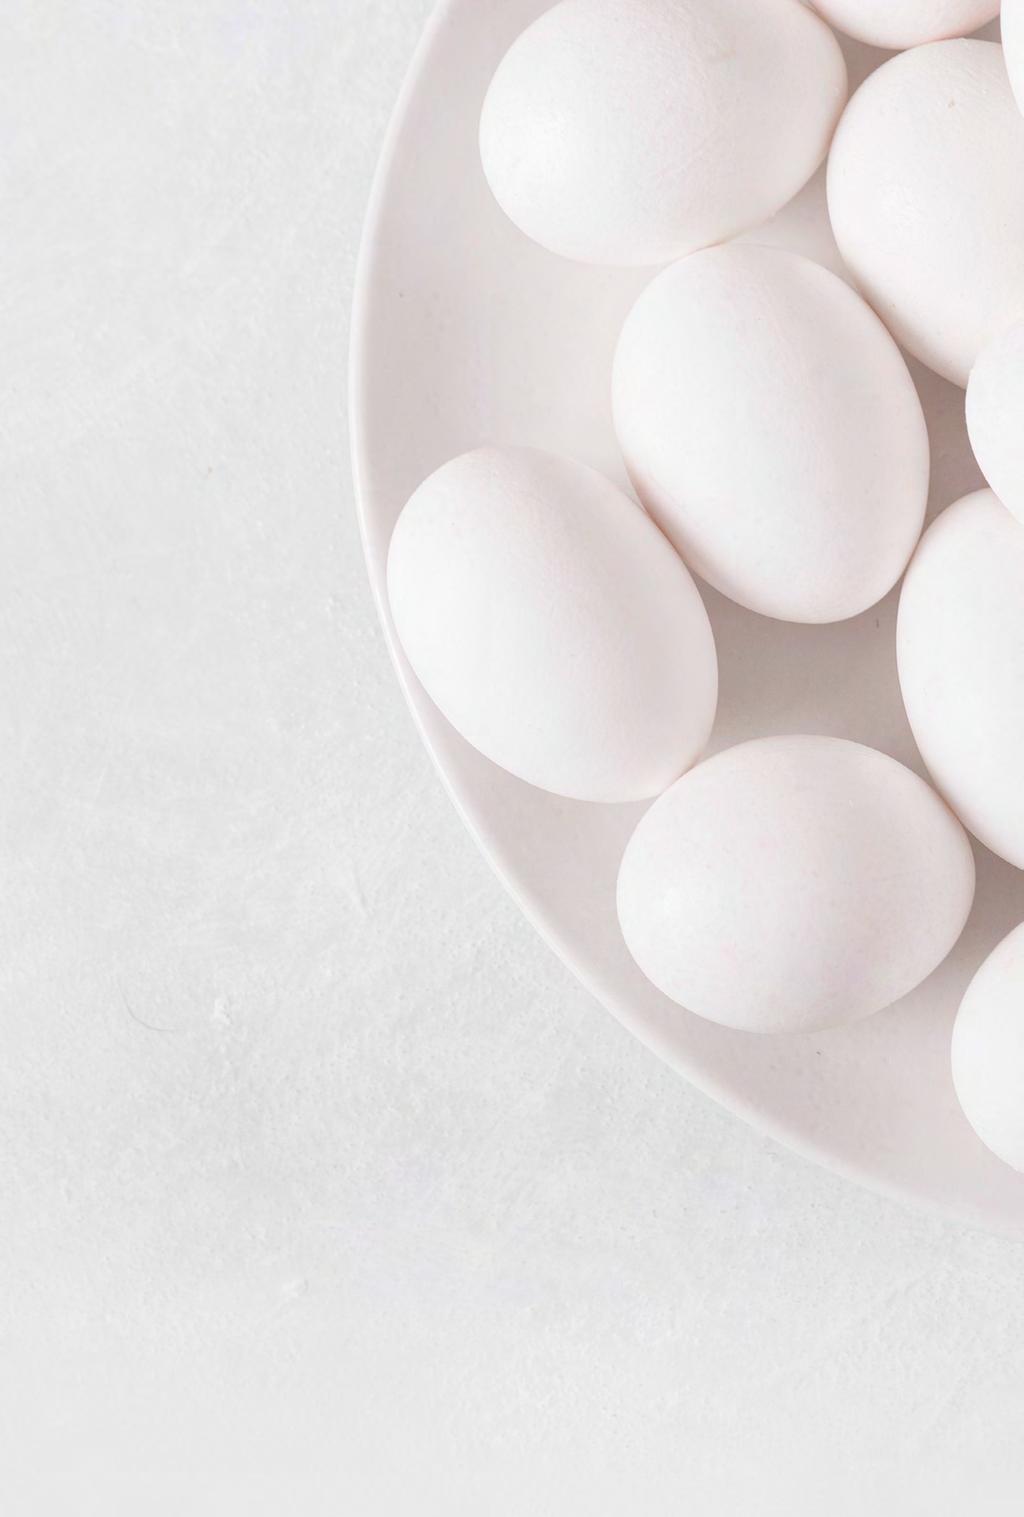 De fyra produktionssätten I Sverige har vi fyra godkända system för att producera ägg.